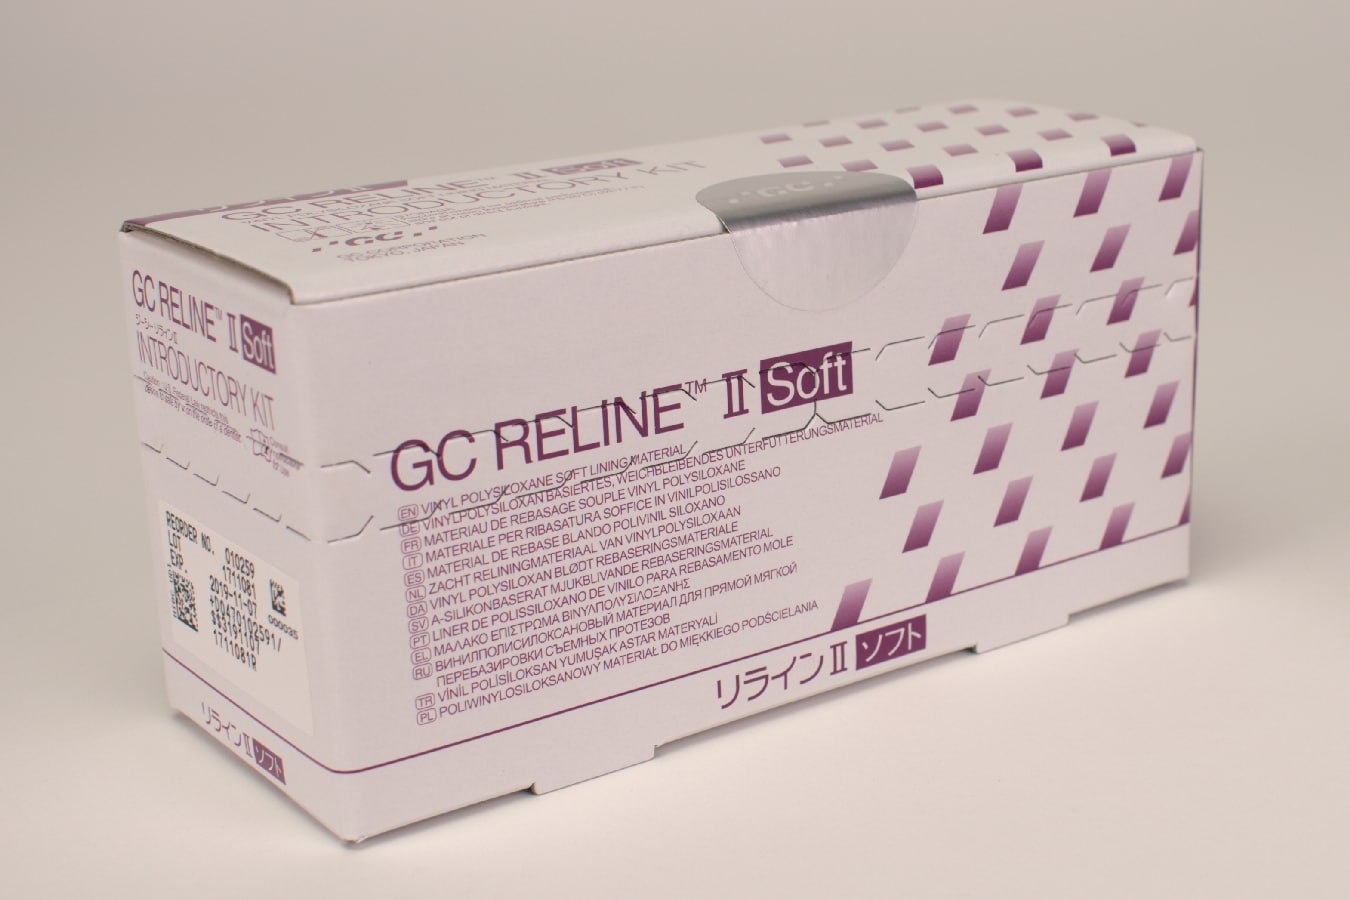 GC Reline II Soft Intro Kit